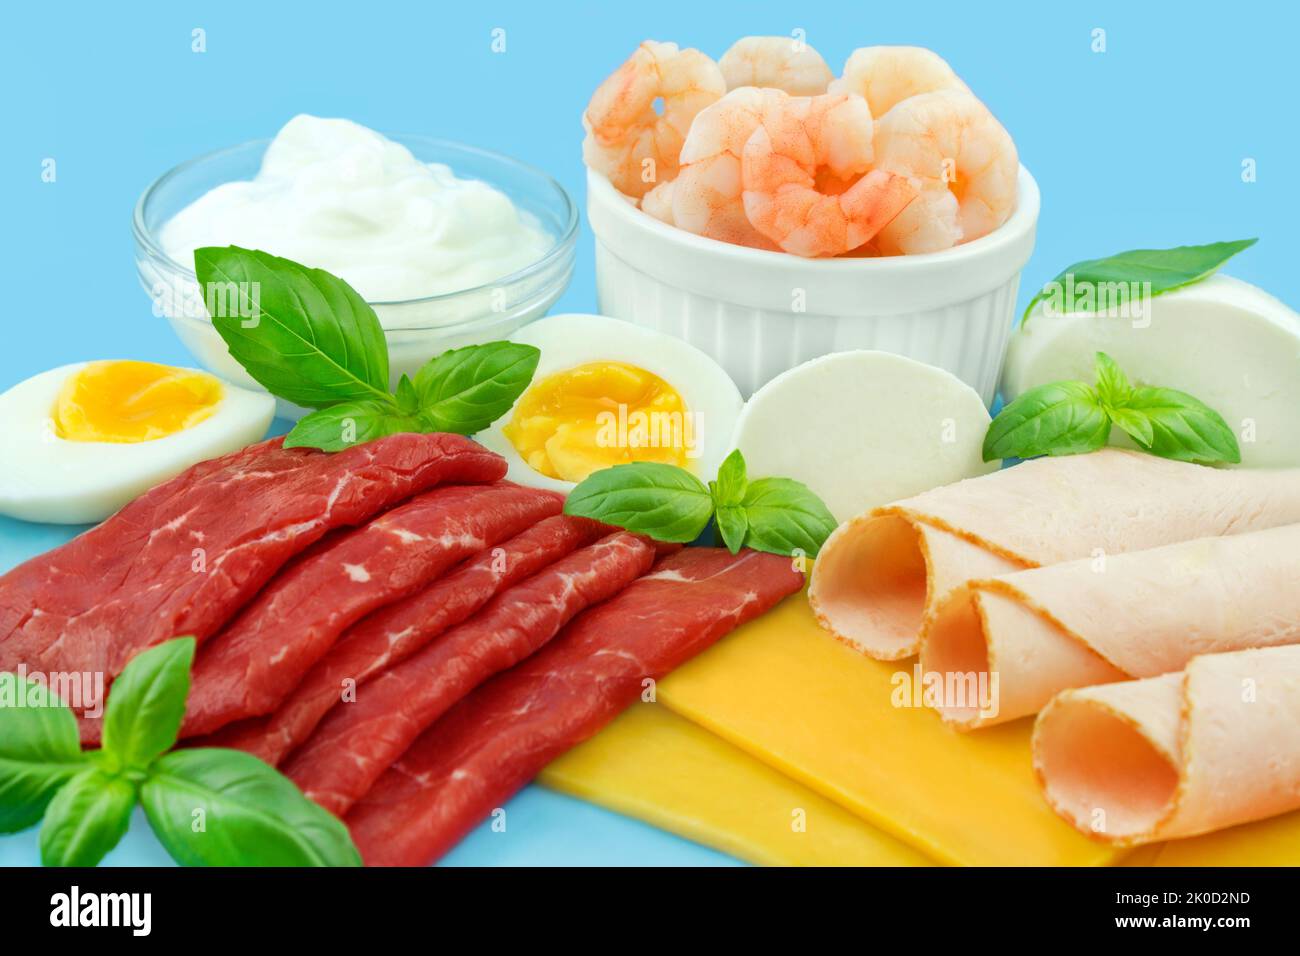 Proteinreiche Ernährung mit Fleisch, Käse, Ei, Joghurt und Shrimps auf blauem Hintergrund Stock Photo